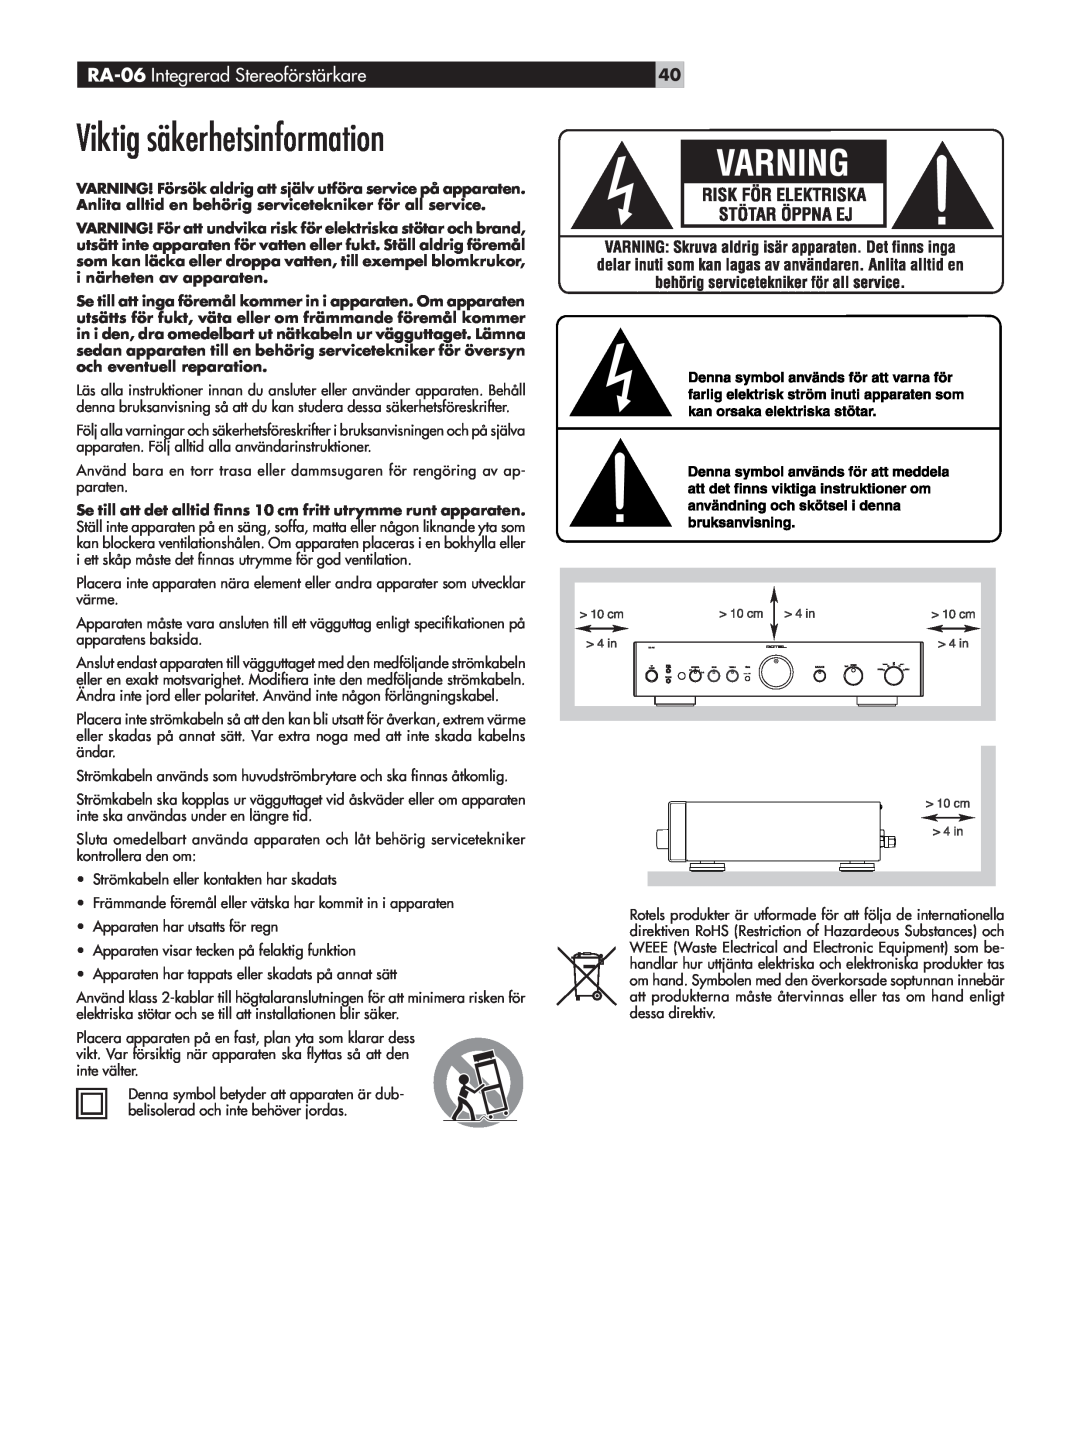 Rotel owner manual Viktig säkerhetsinformation, RA-06 Integrerad Stereoförstärkare 